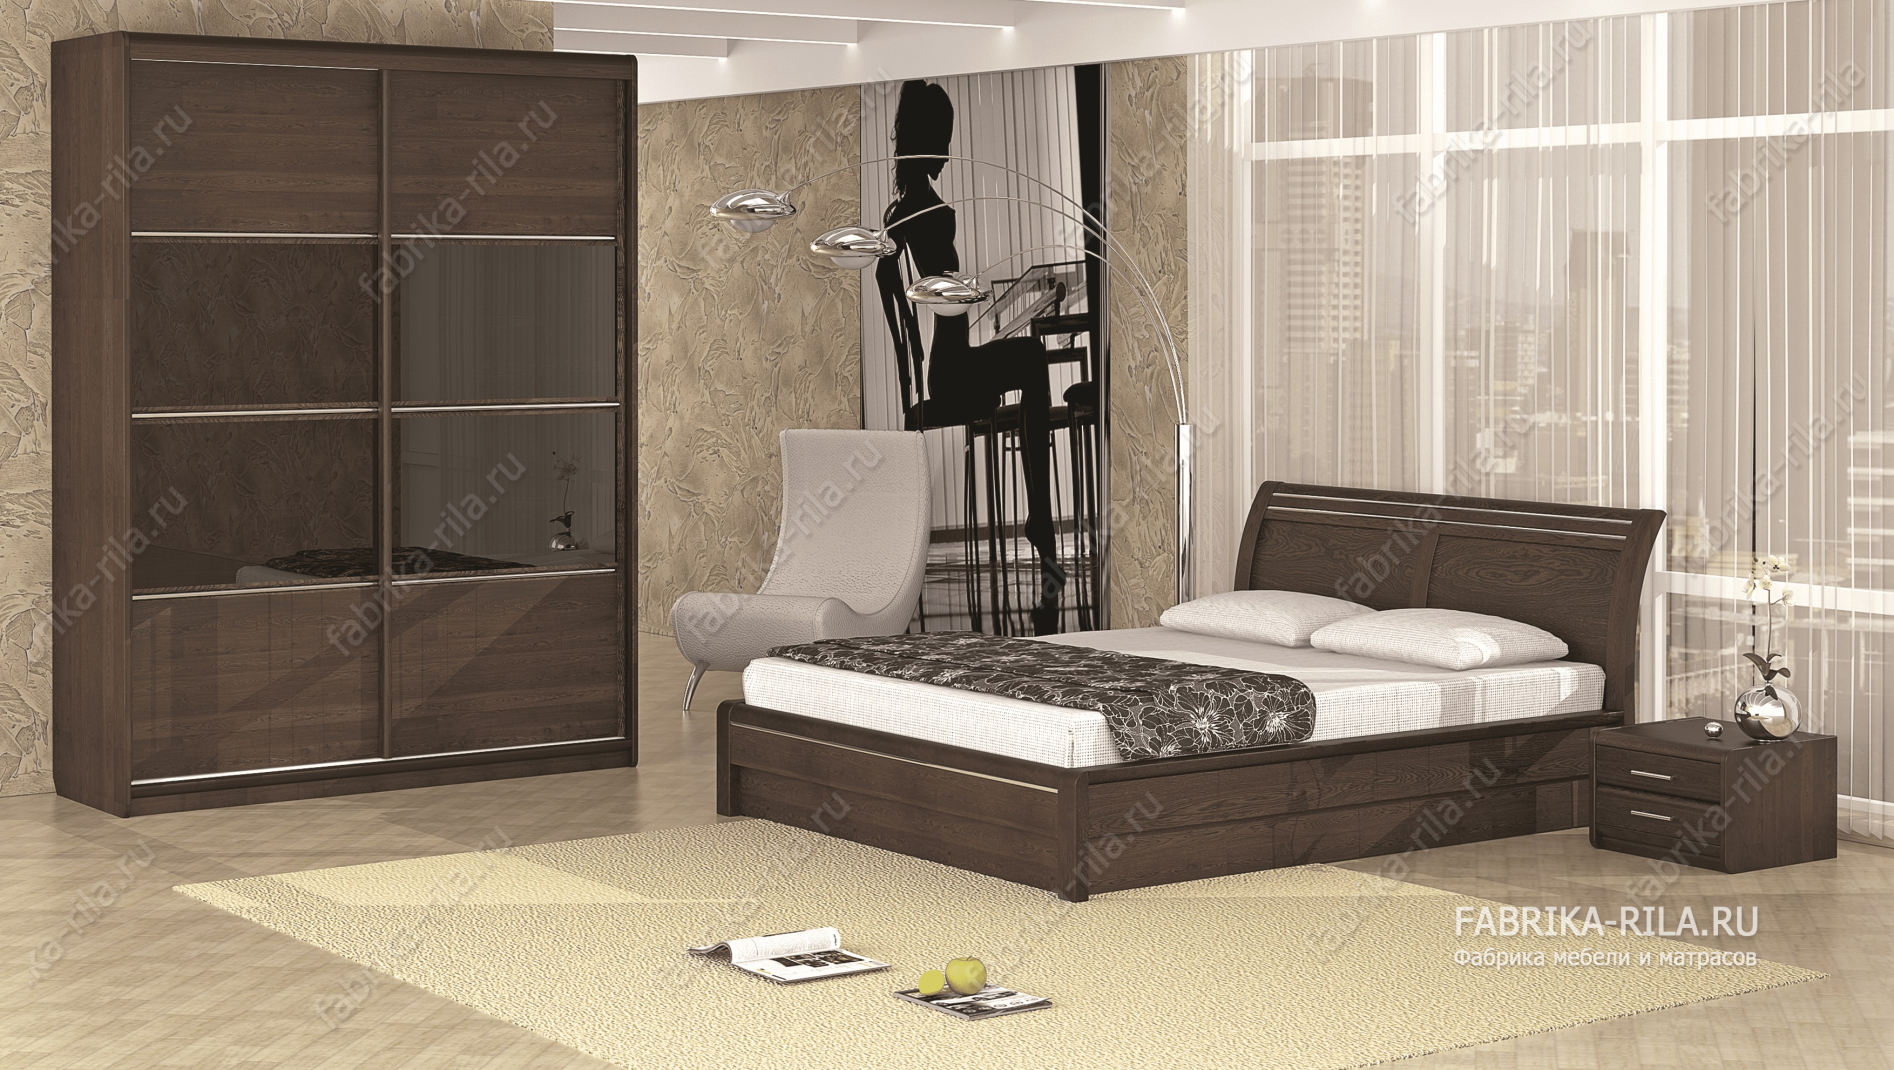 Кровать Okaeri 2 — 90x190 см. из ясеня